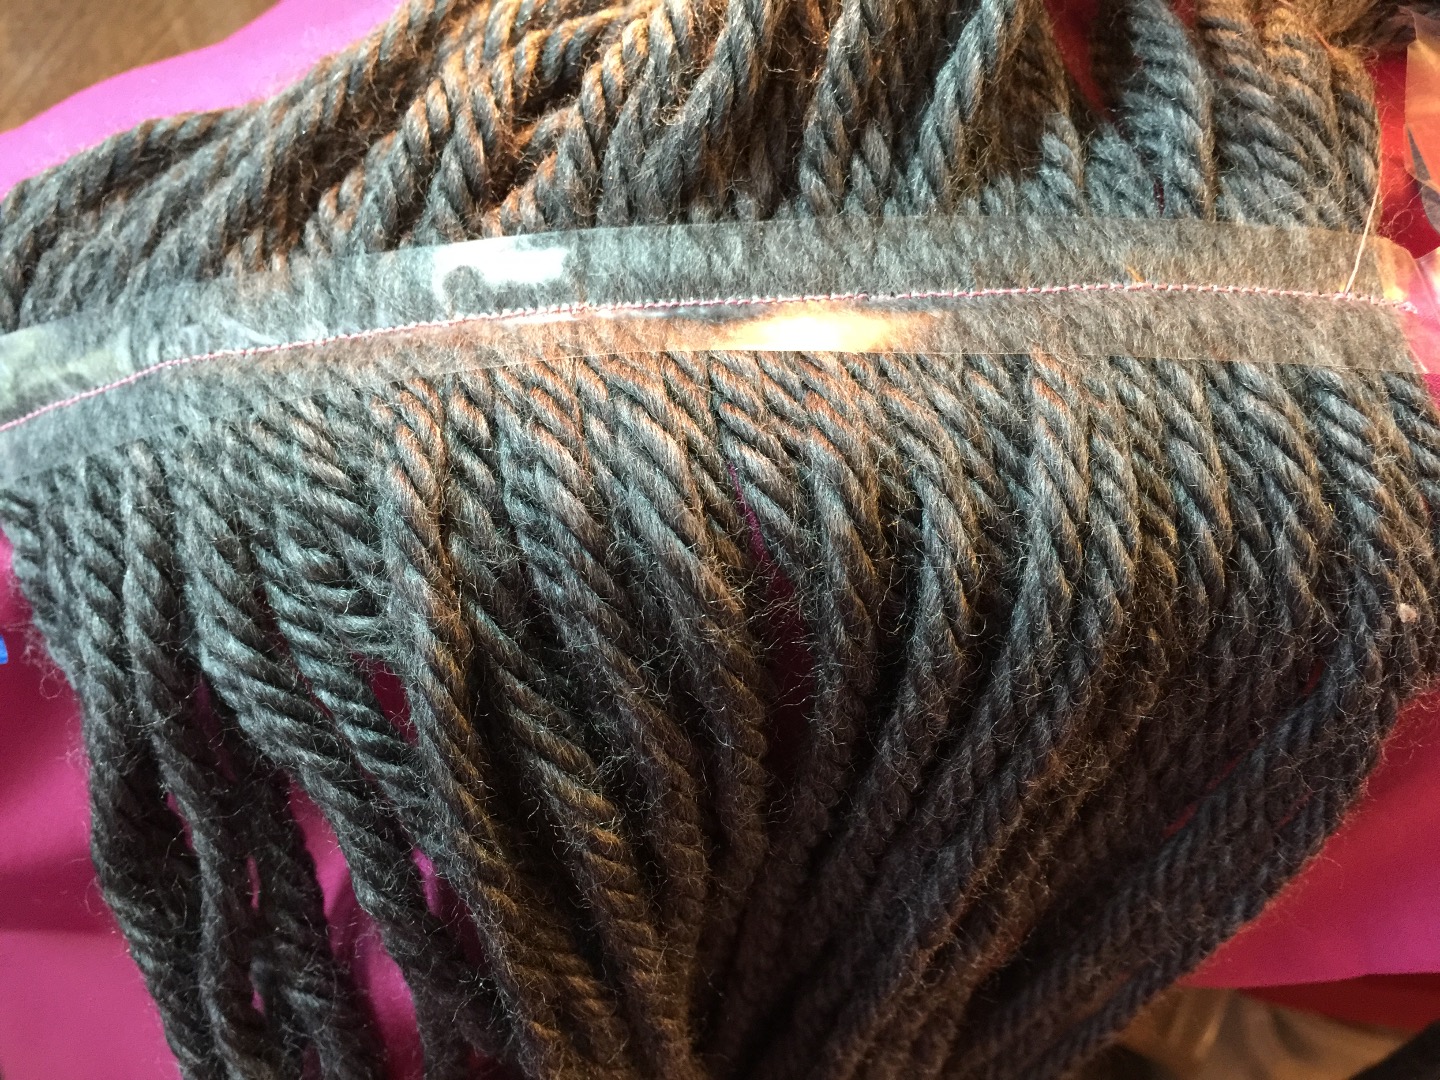 yarn-hair-stitching-inside-mdp.JPG